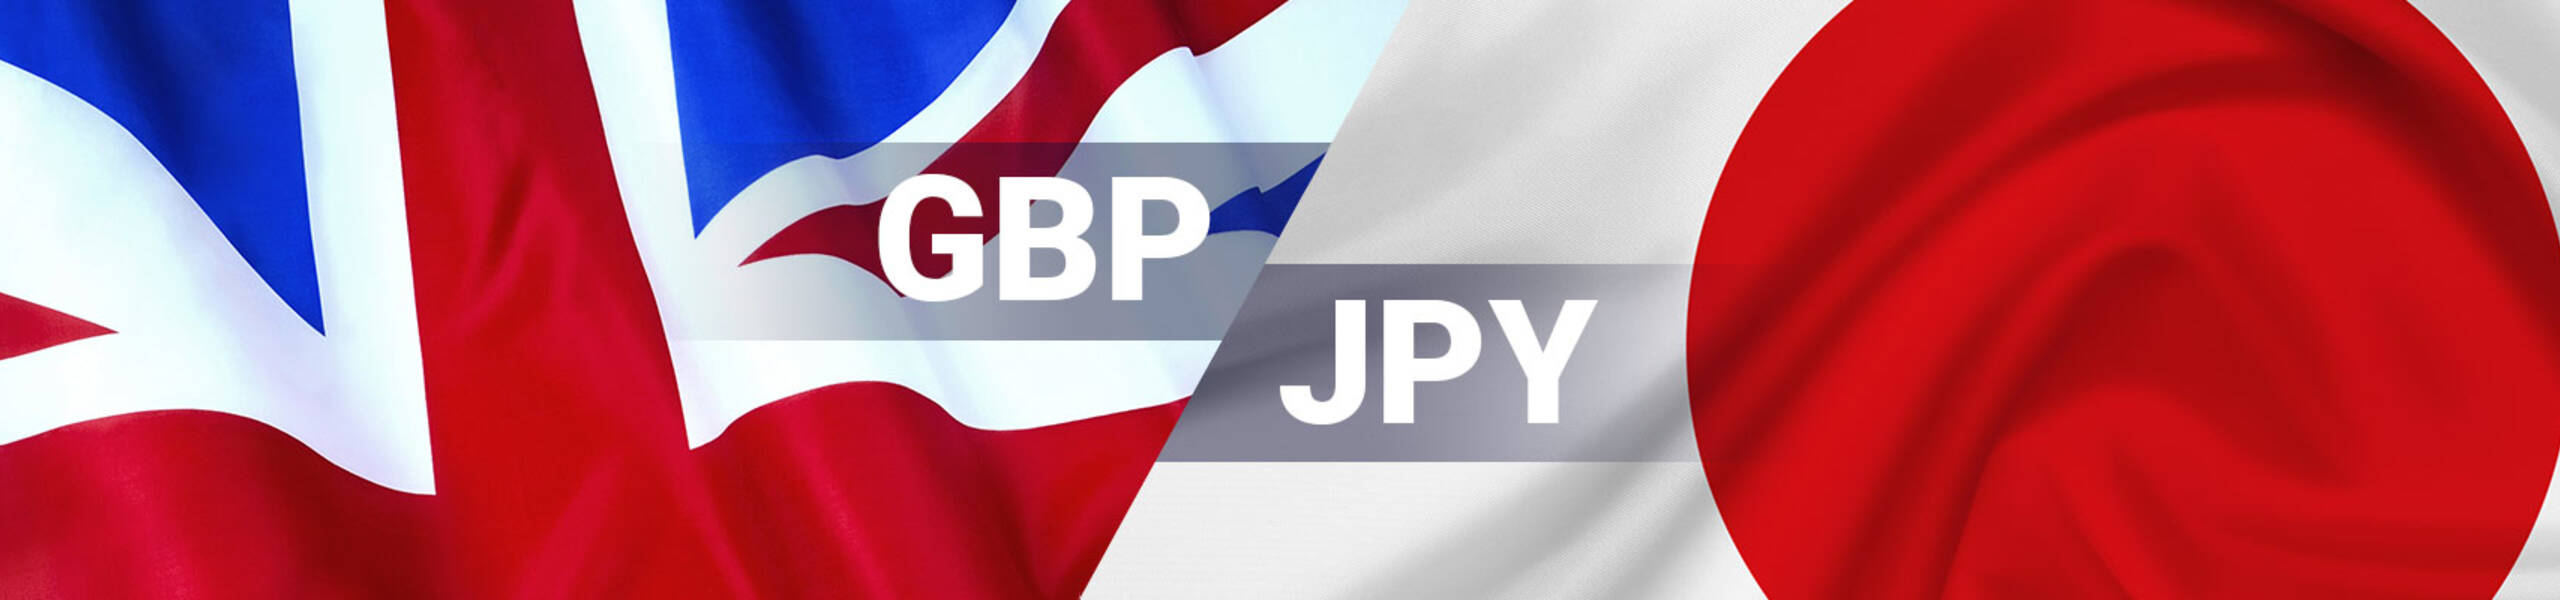 GBP/JPY テクニカル分析 2018/06/26